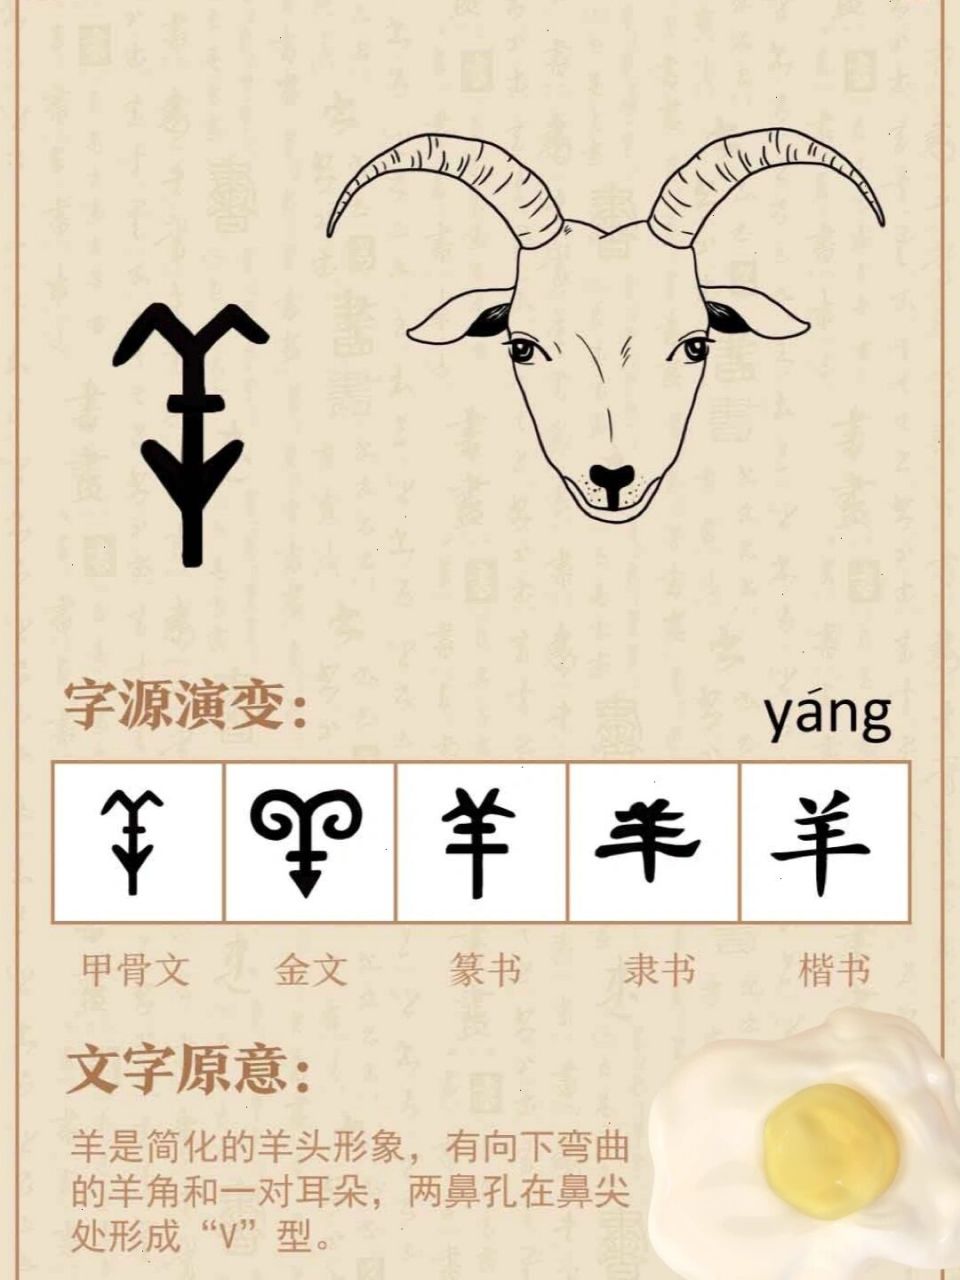 羊的演变过程汉字图片